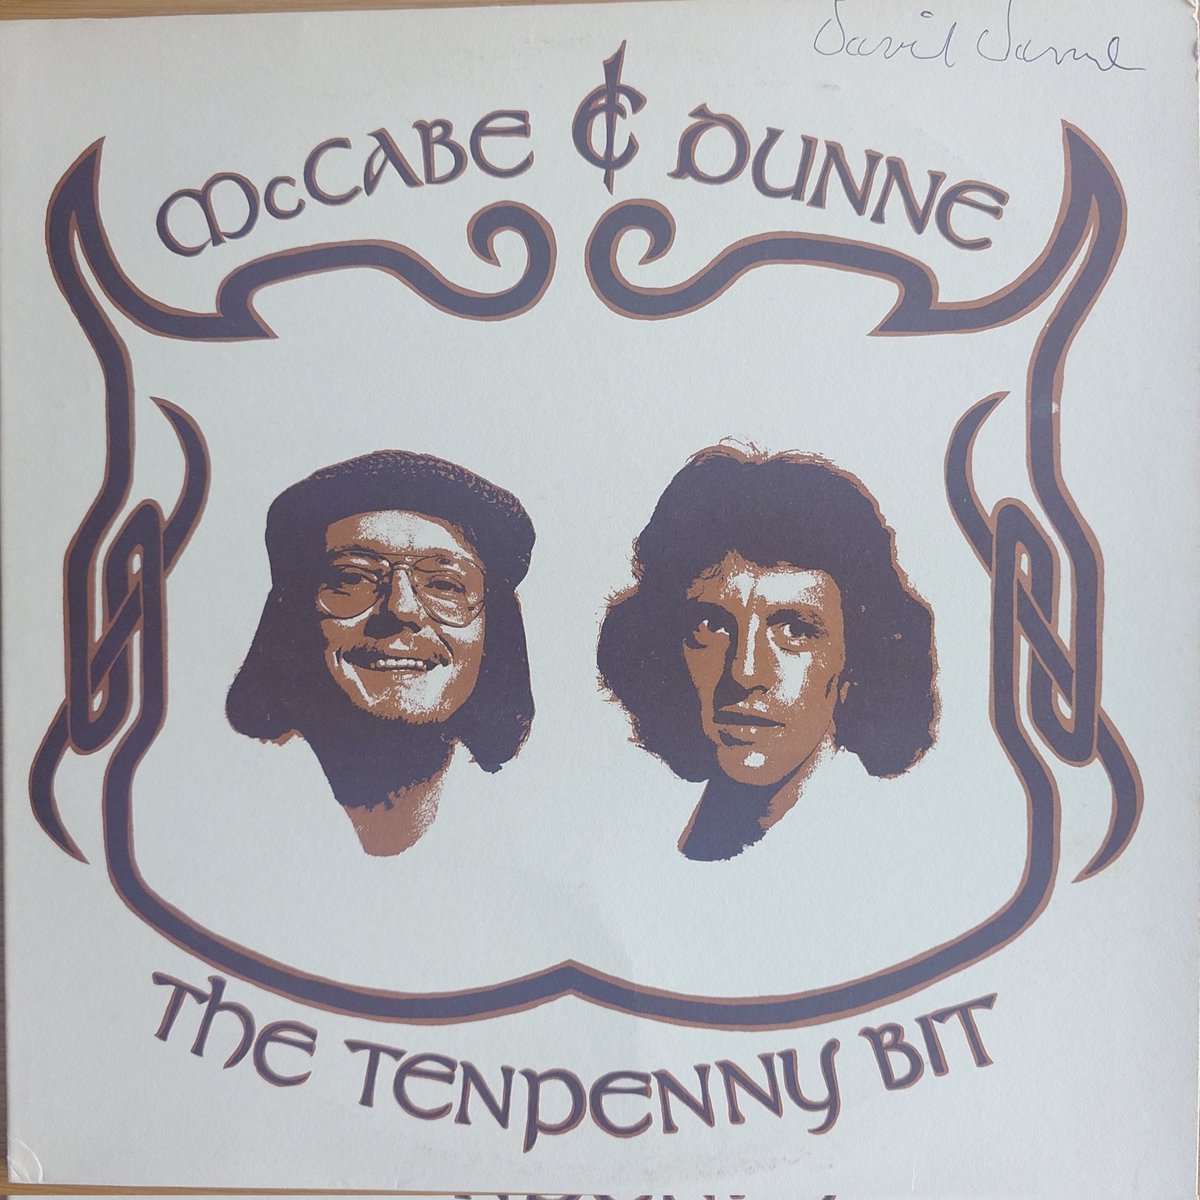 【新規出品】
McCabe and Dunne / The Tenpenny Bit

イリノイ州出身のフォークデュオが1976年に発表した唯一のアルバム。
#シェア音楽棚tent     #西荻窪
#ssw

blog.goo.ne.jp/milkwood/e/3f8…